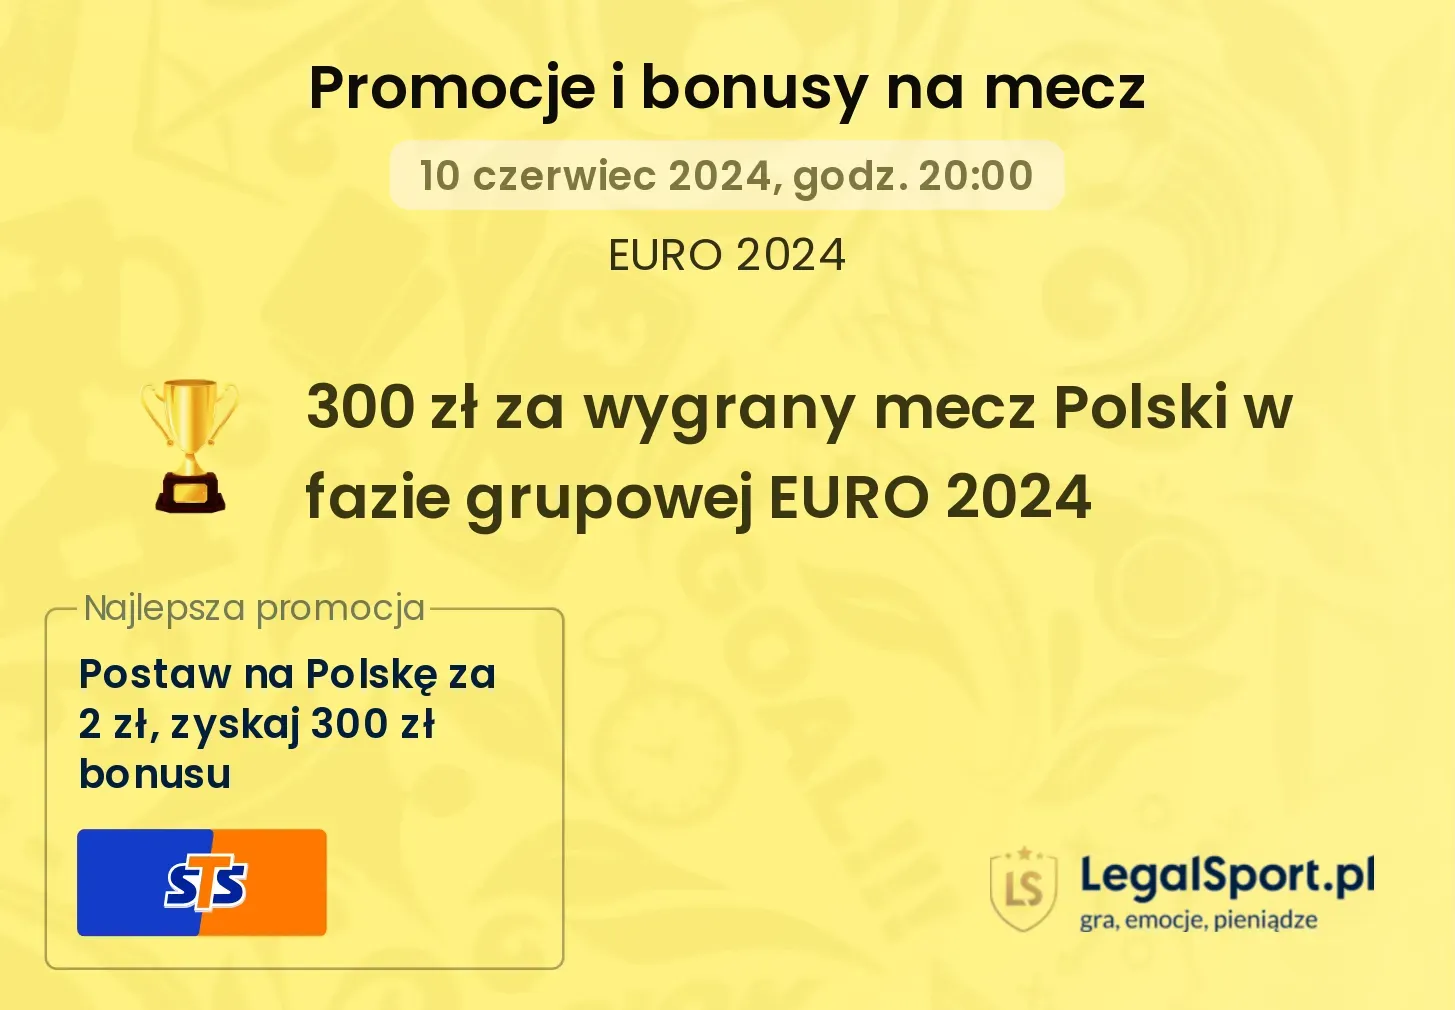 300 zł za wygrany mecz Polski w fazie grupowej EURO 2024 promocje bonusy na mecz